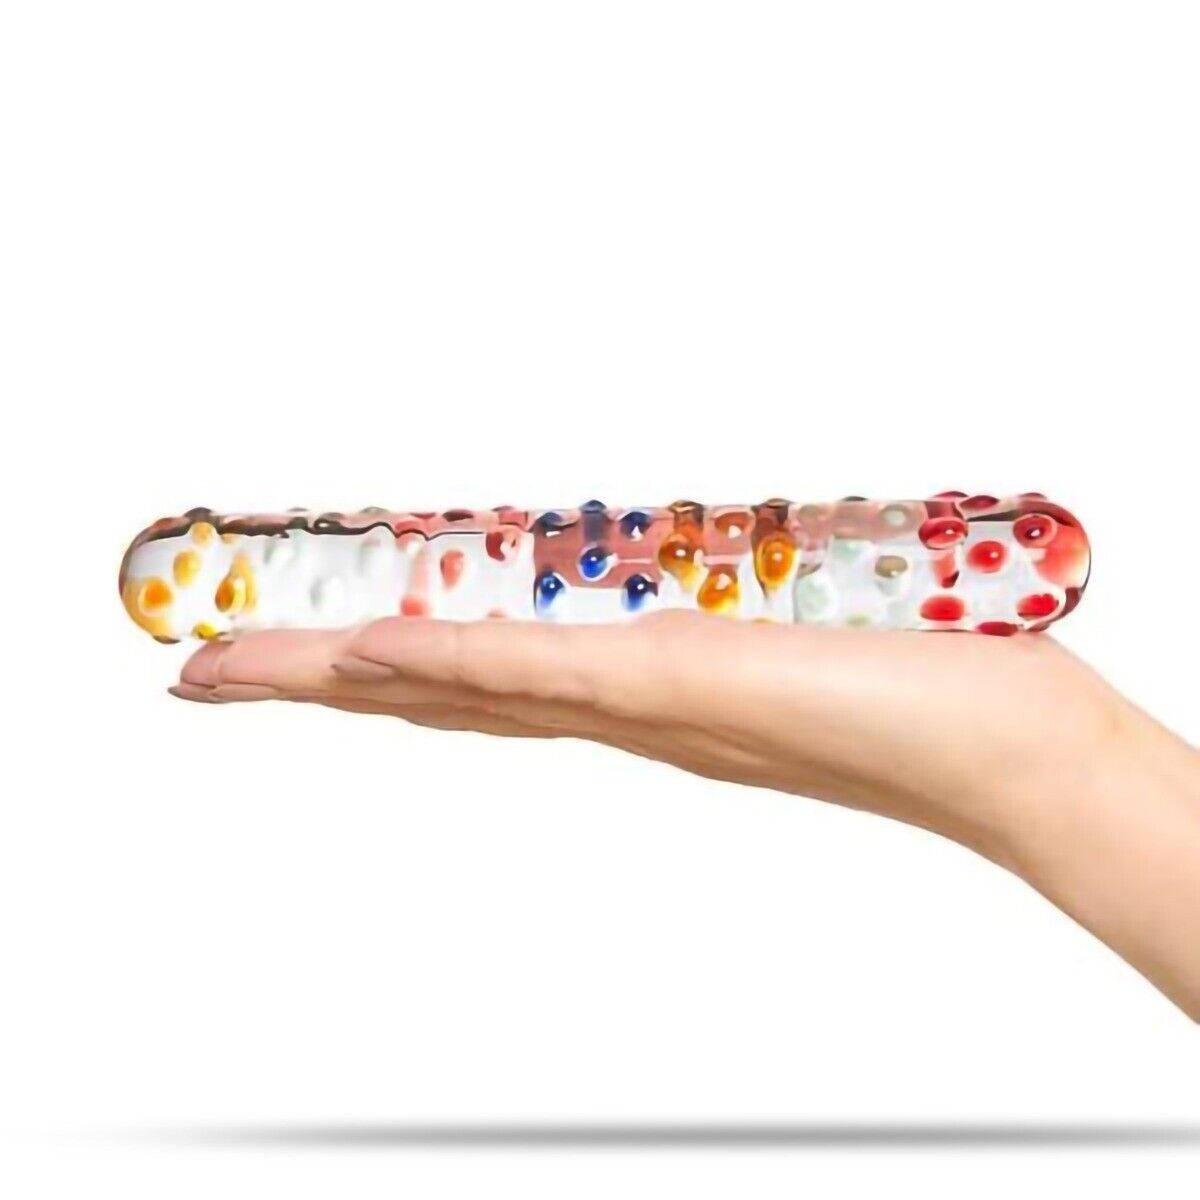 Nubby Textured Sensual Glass Anal G-spot Dildo Dong Massager Wand